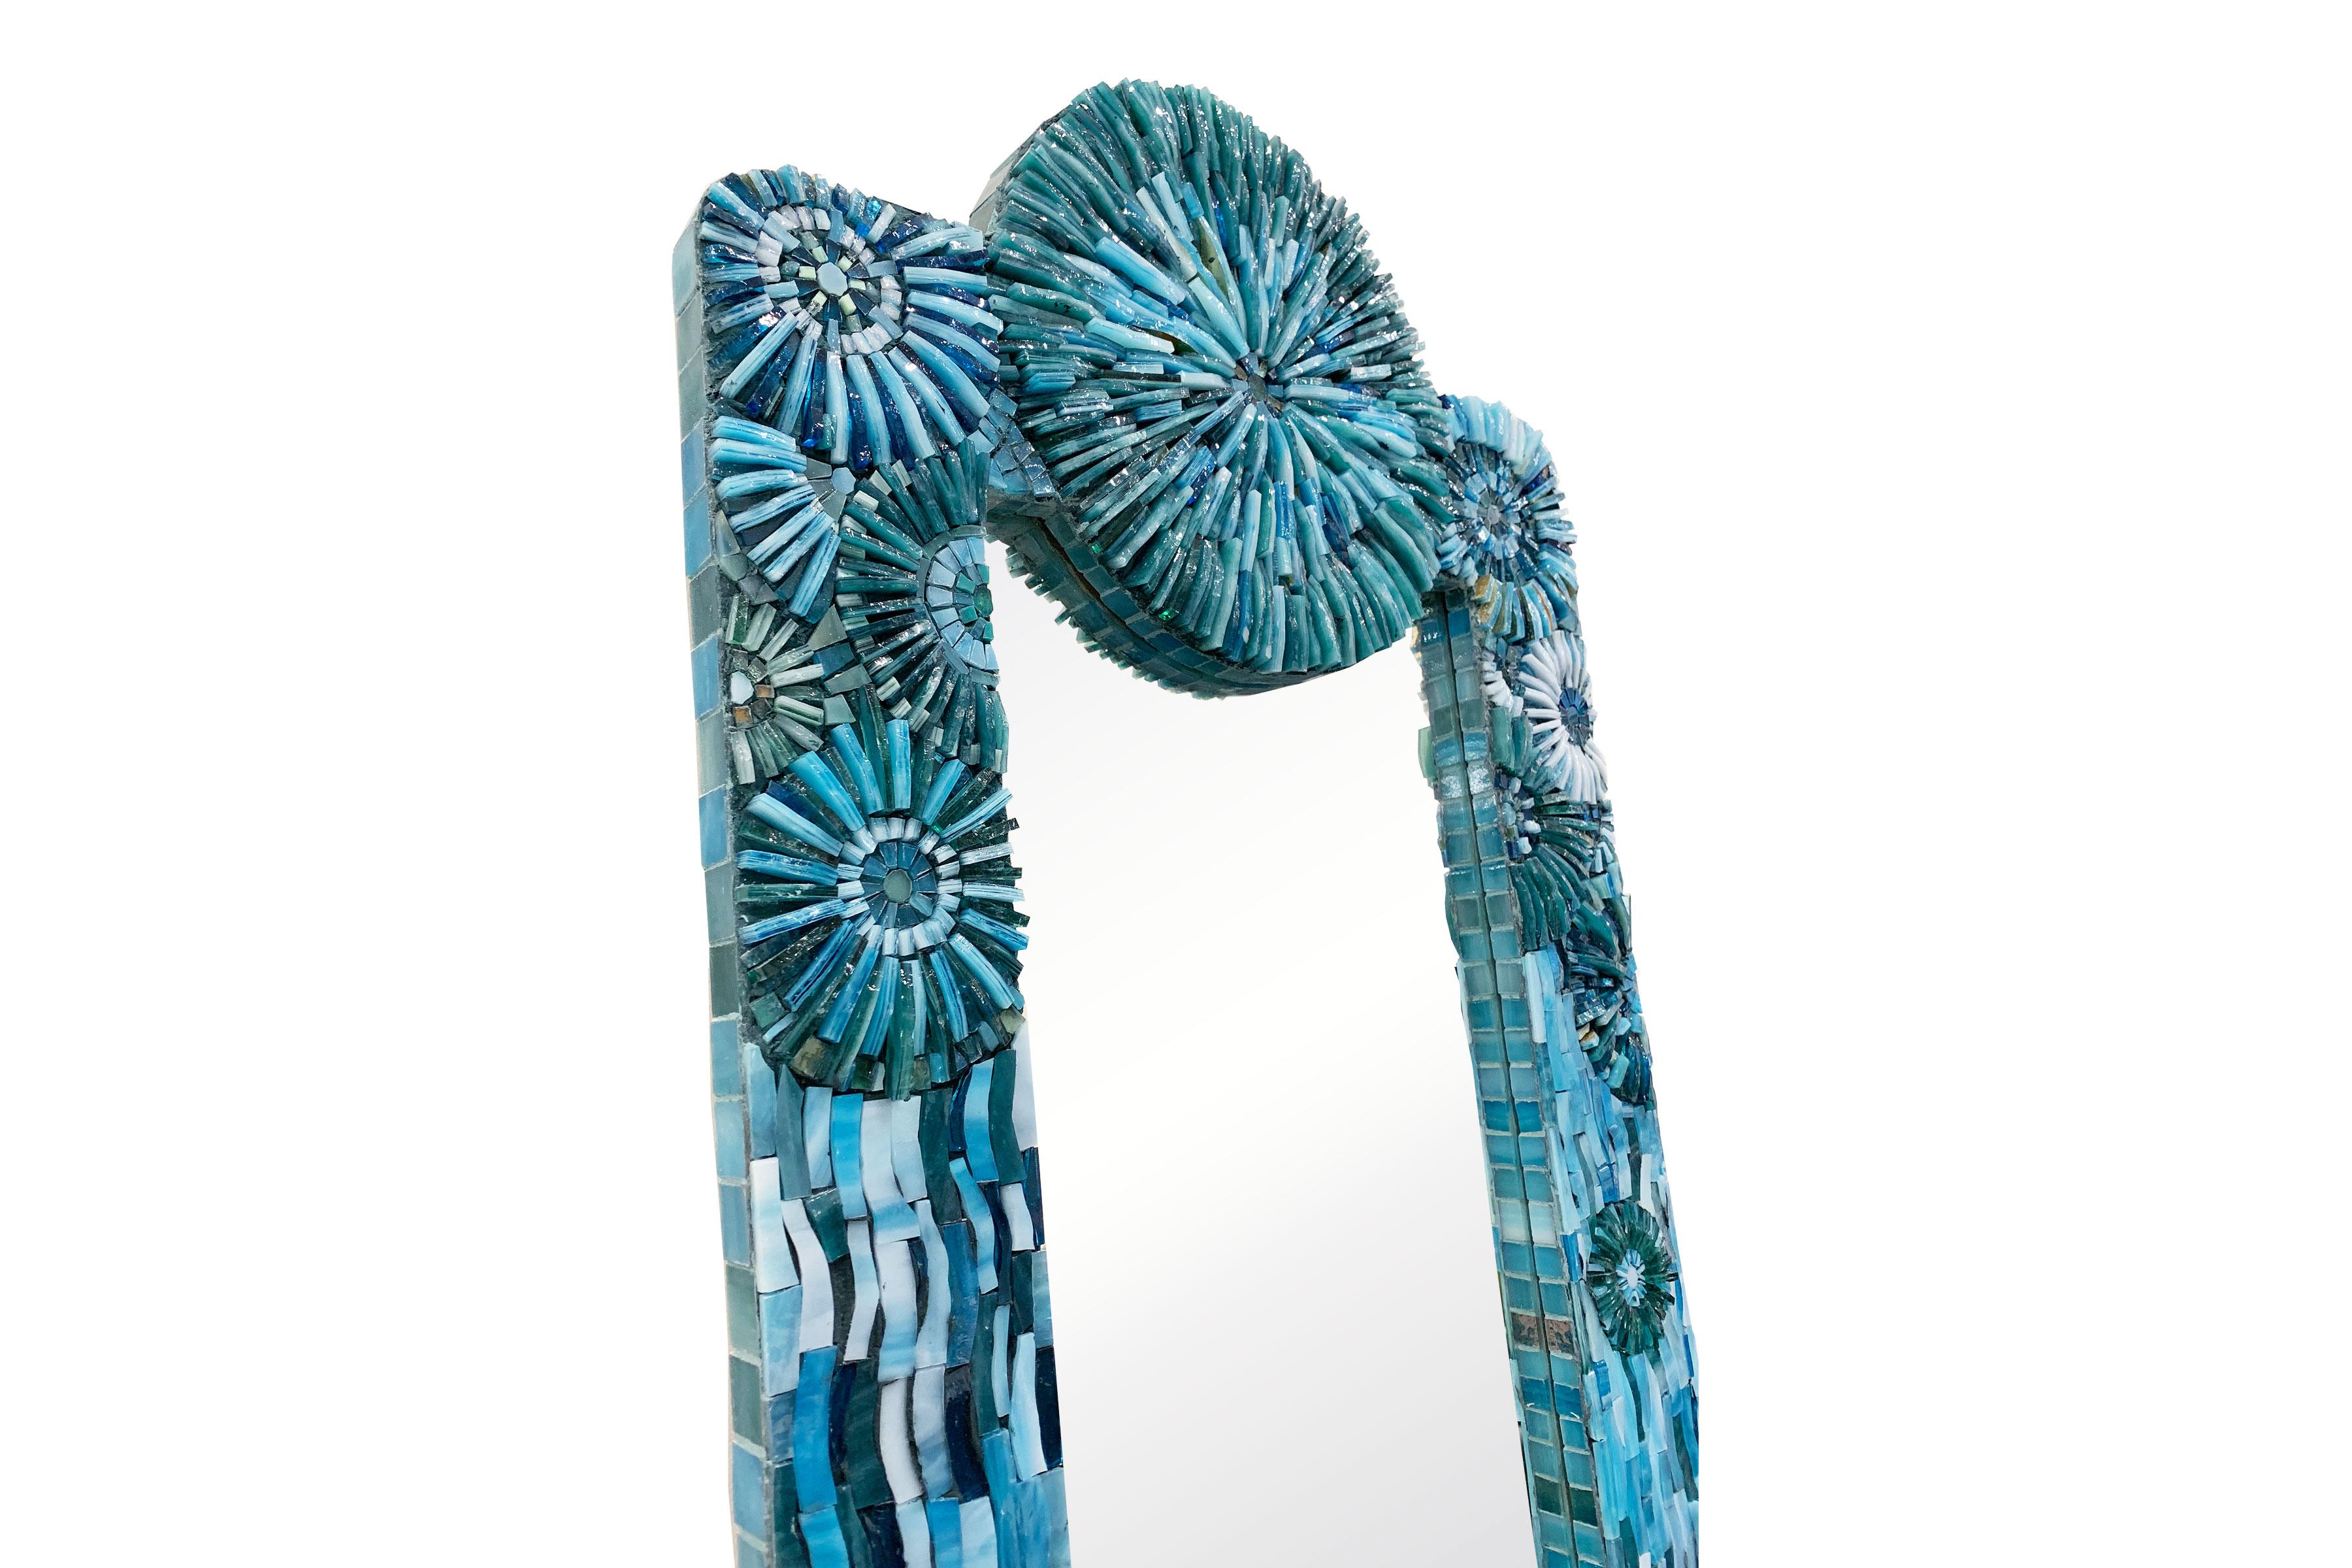 Der rechteckige Blütenspiegel von Ercole Home hat einen 3''-Rand.
Handgeschliffenes Glasmosaik in verschiedenen Türkistönen schmückt die Oberfläche in Blüten- und Scherbenmustern.
Sondergrößen und -ausführungen sind erhältlich. 
Hergestellt in